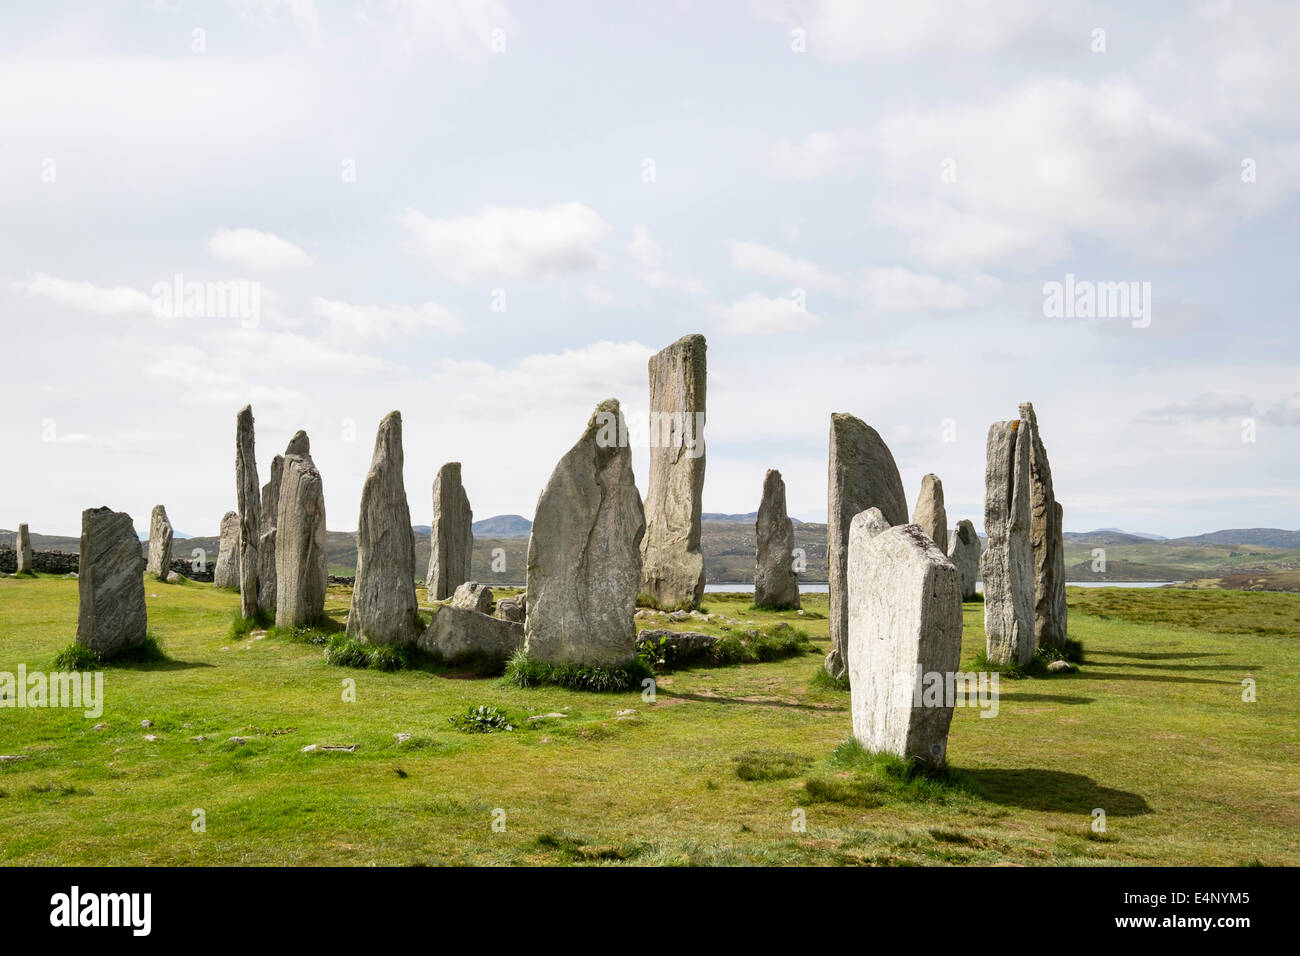 Círculo de piedra neolítica de Callanish Standing Stones desde 4500 BC Calanais Isle of Lewis Outer Hebrides Islas occidentales de Escocia UK Foto de stock